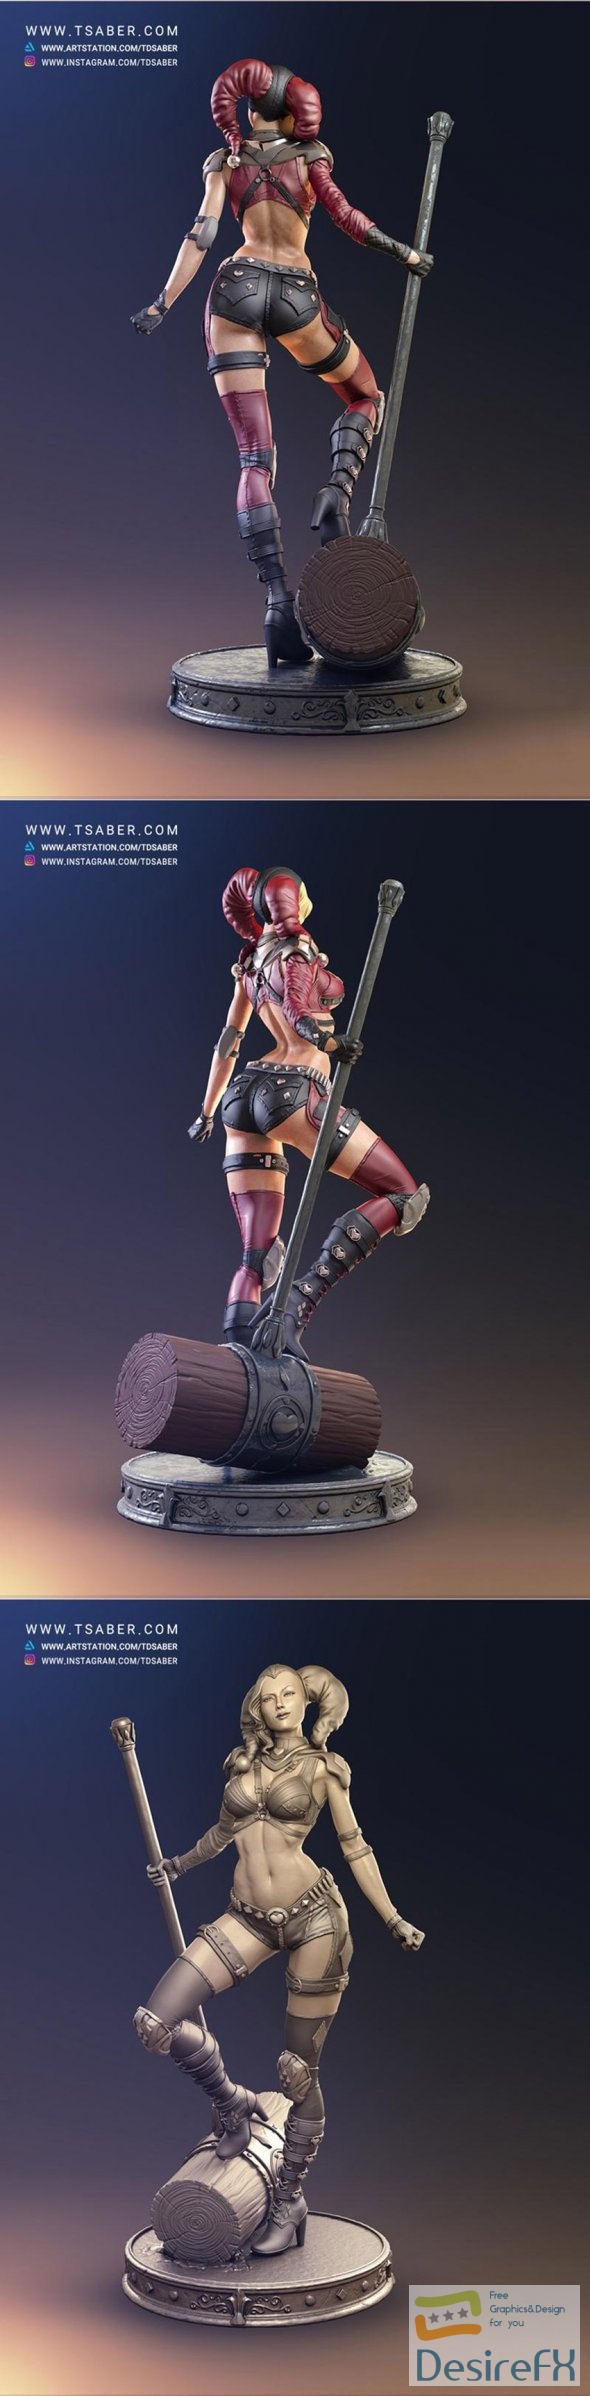 Harley Quinn statue 3D Print